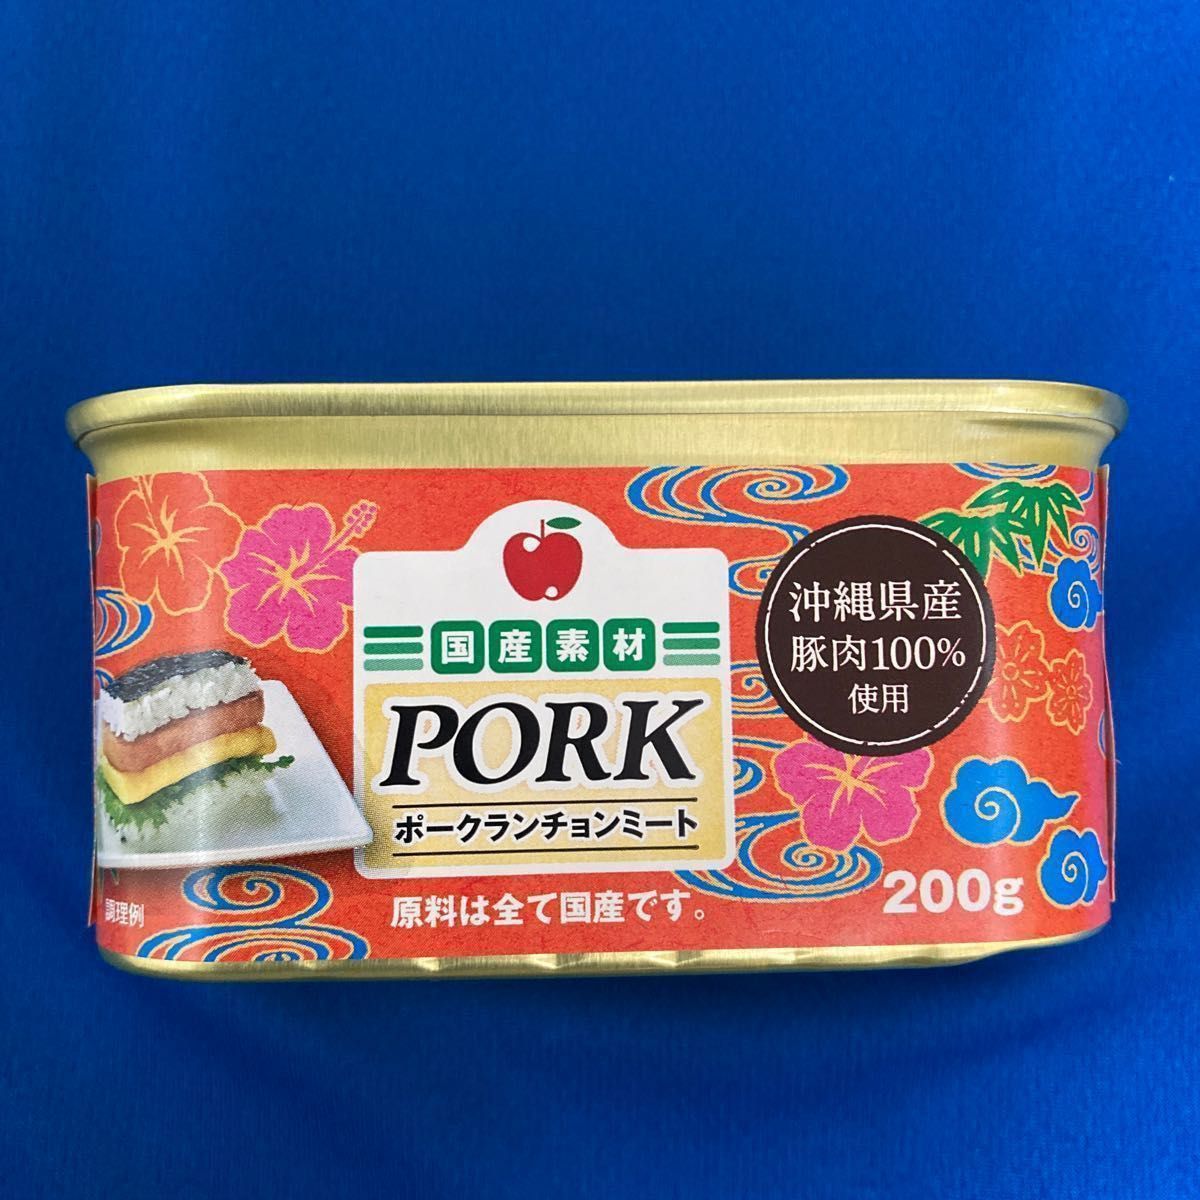 人気の製品 沖縄限定 ポークランチョンミート8缶 わしたポーク2缶